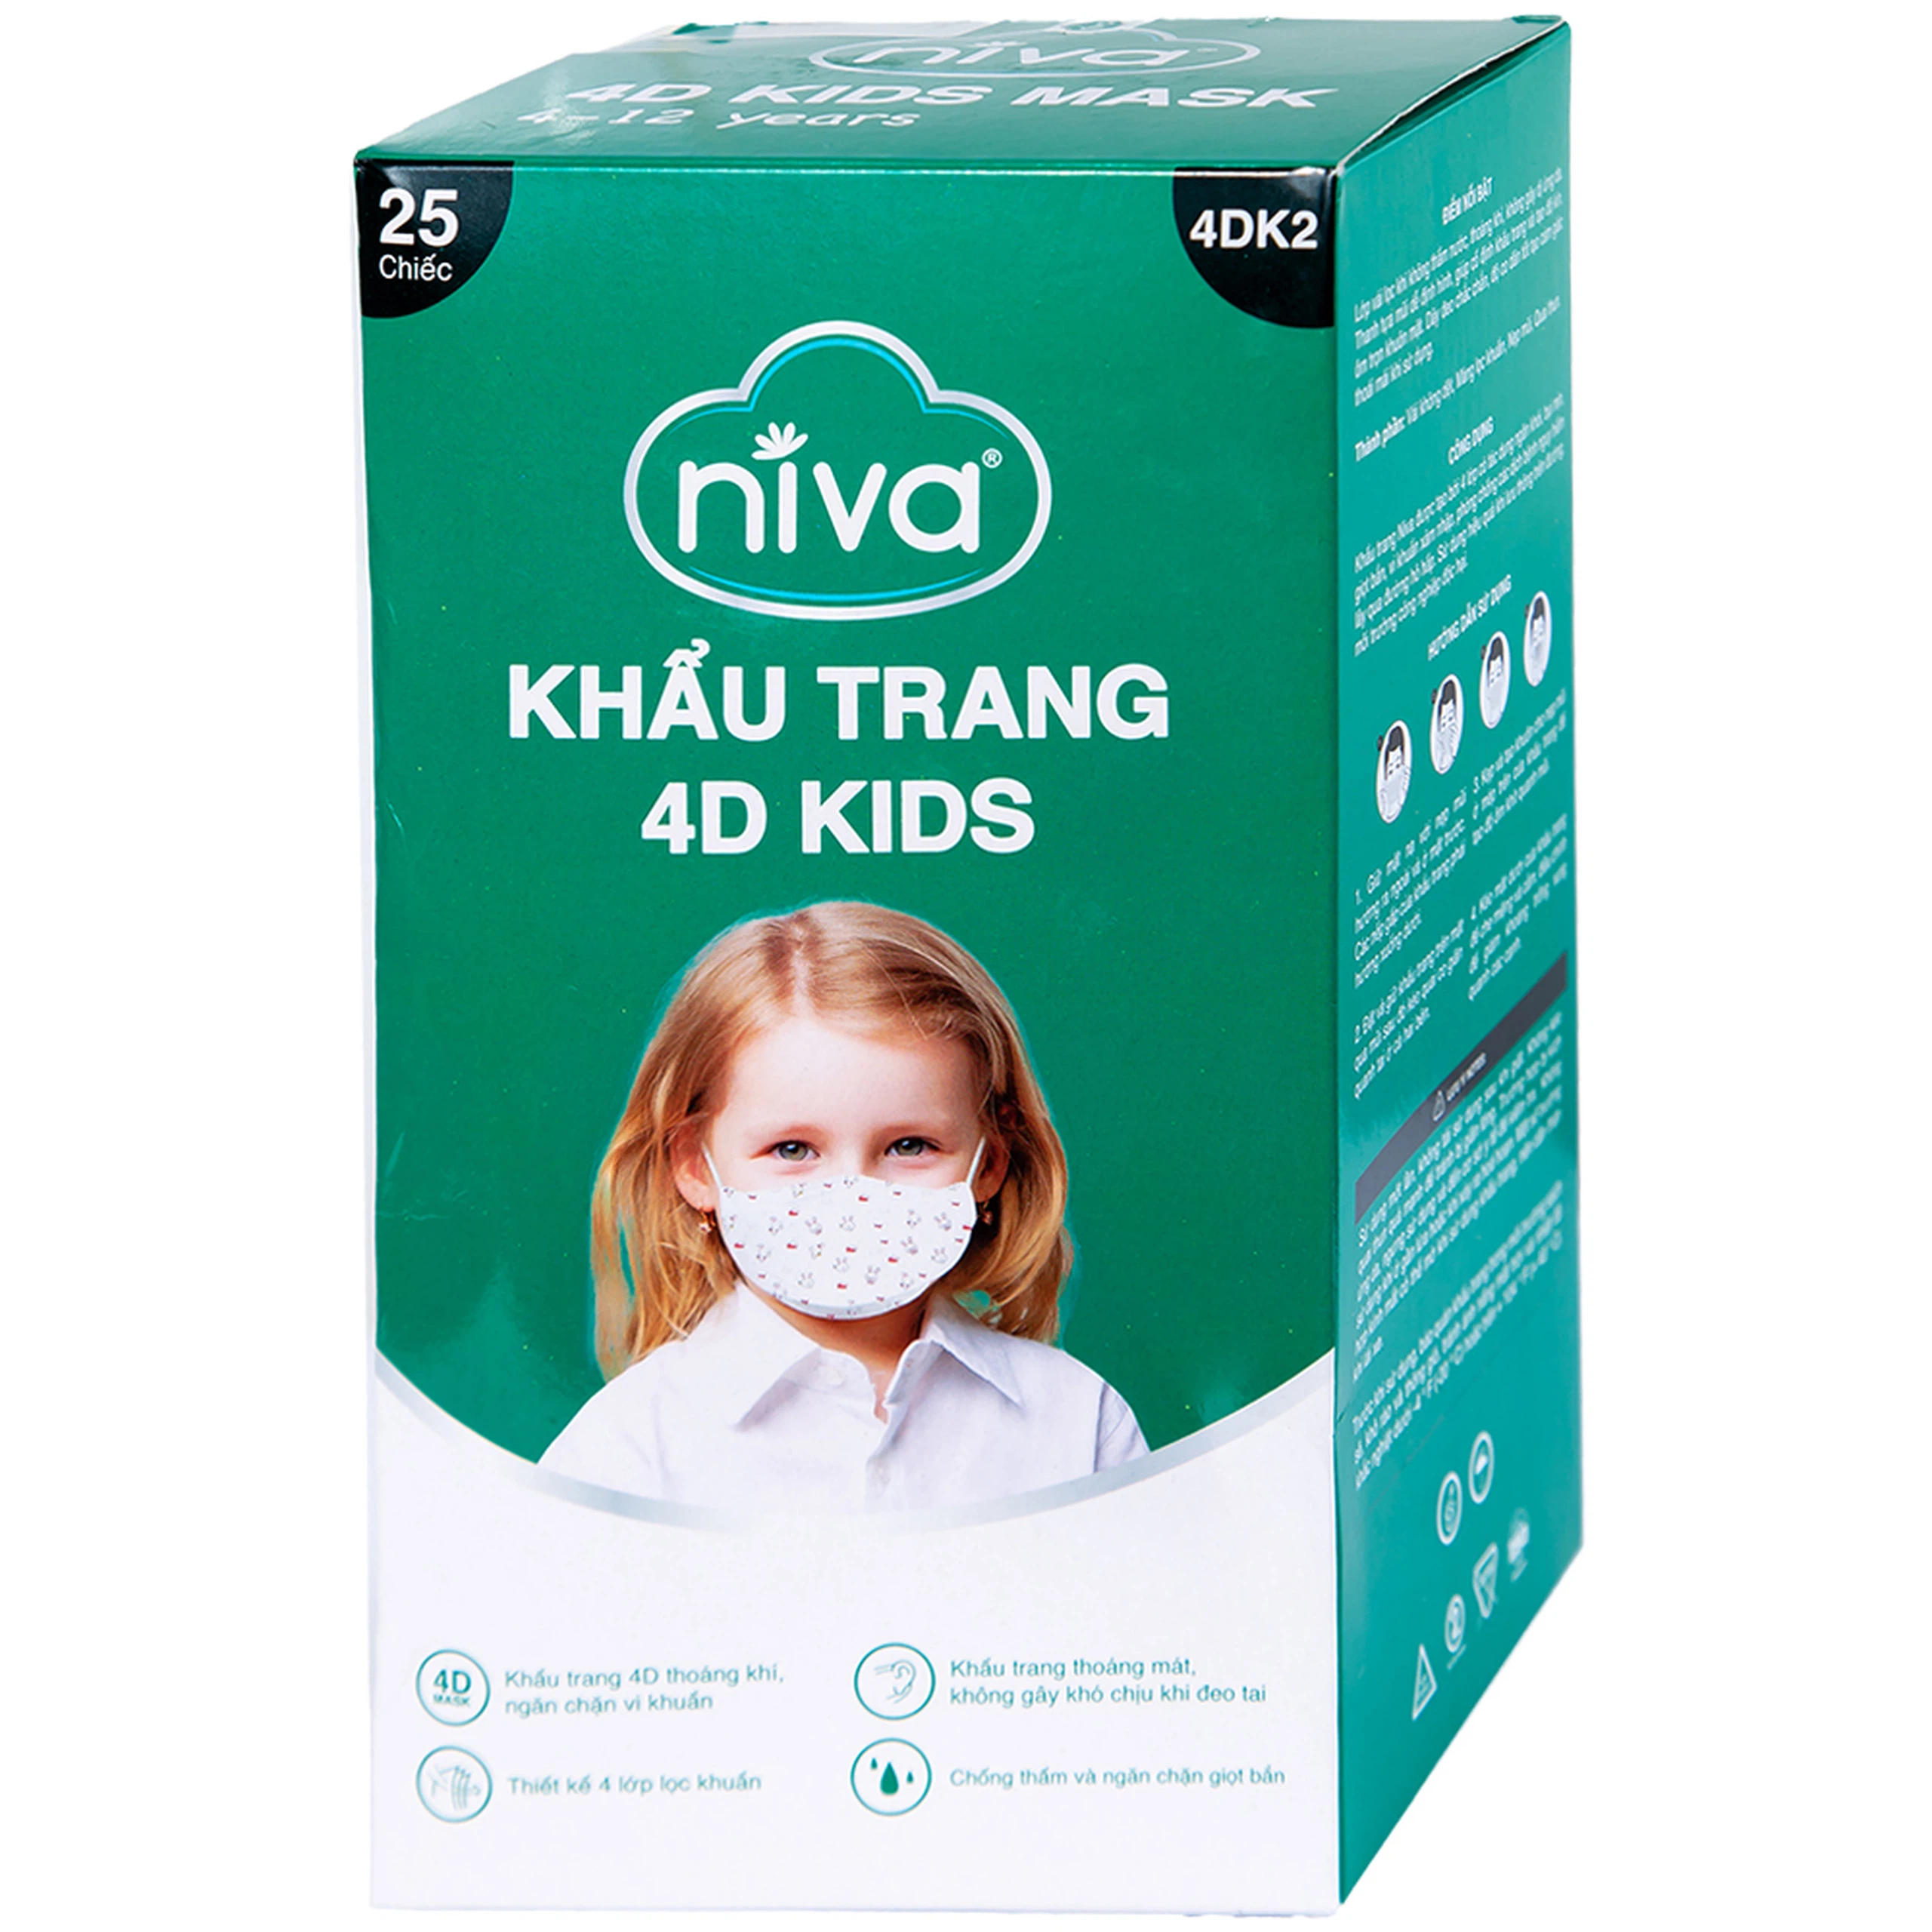 Khẩu trang 4D Kids Niva thoáng khí, ngăn chặn vi khuẩn, giọt bắn (25 cái)